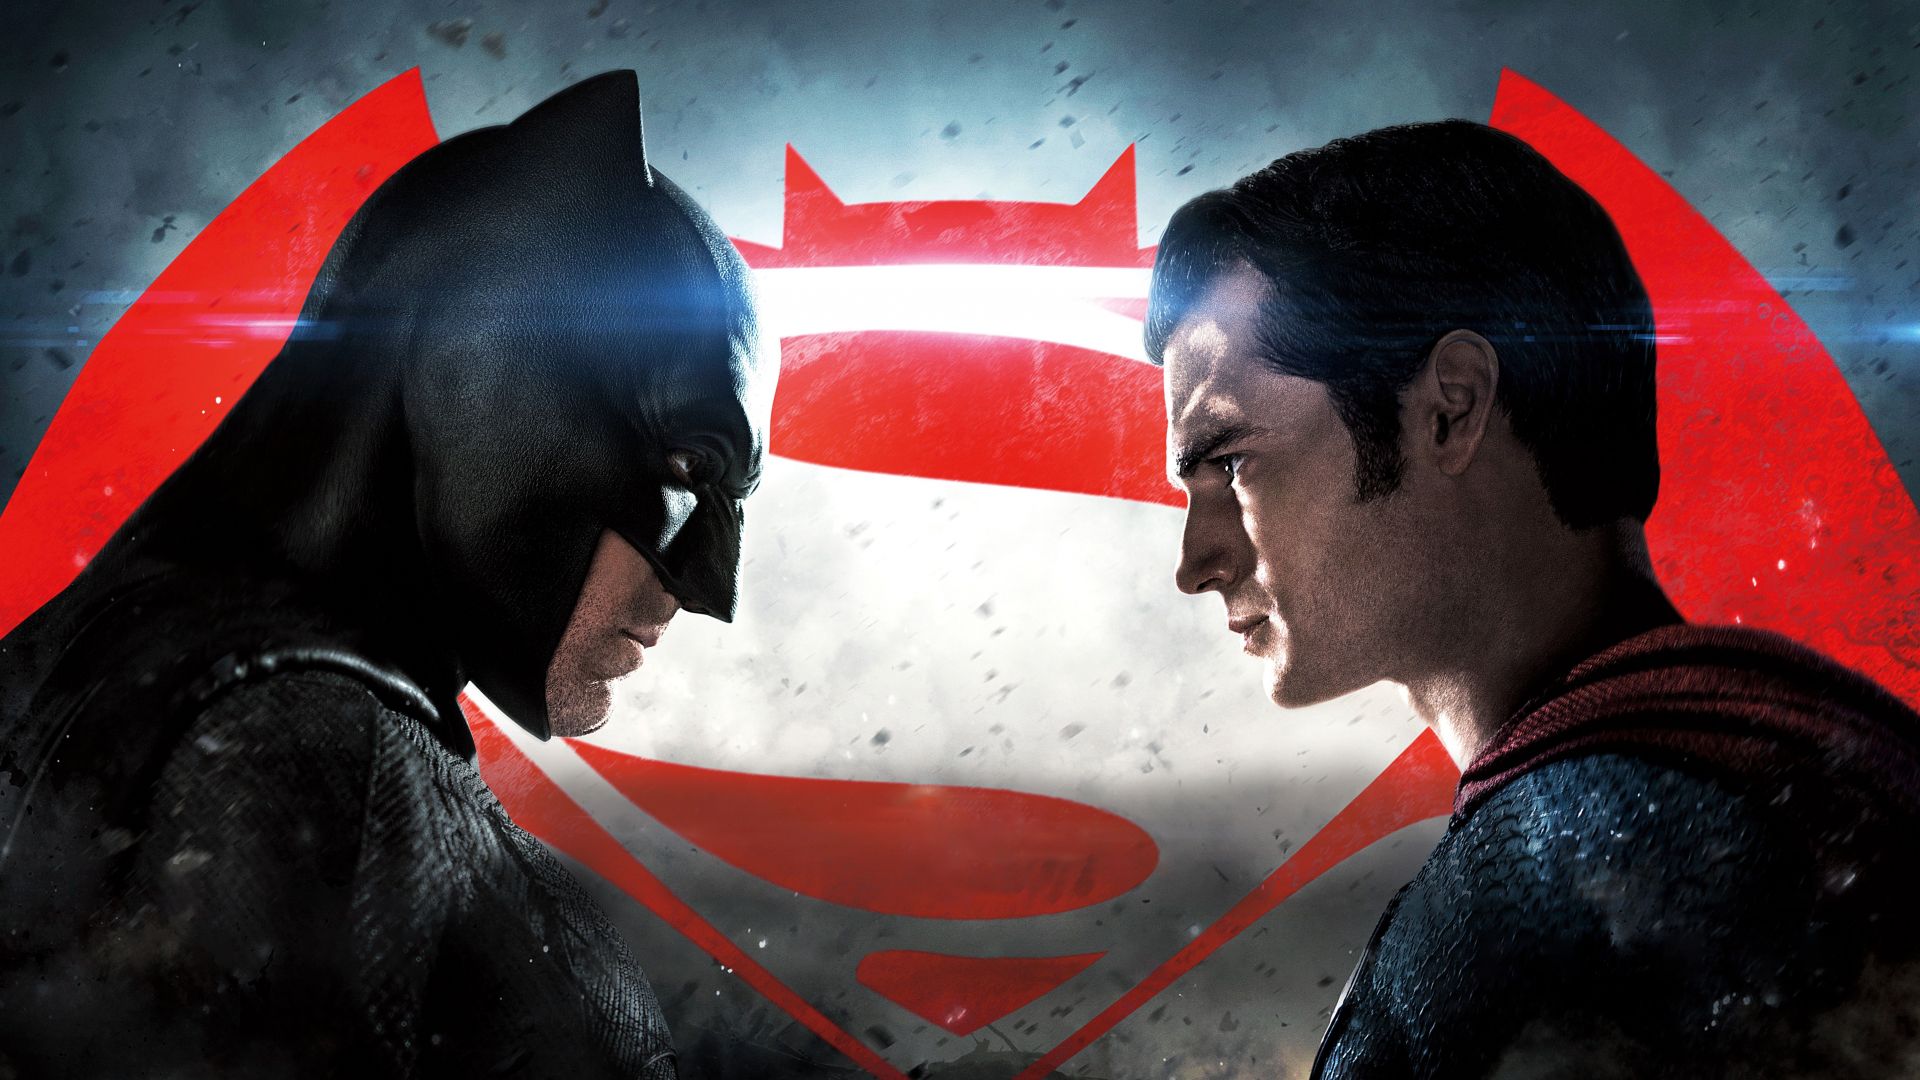 Бэтмен против Супермена: На заре справедливости, Генри Кавилл, Лучшие фильмы 2016, Batman v Superman: Dawn of Justice, Henry Cavill, Best Movies of 2016 (horizontal)